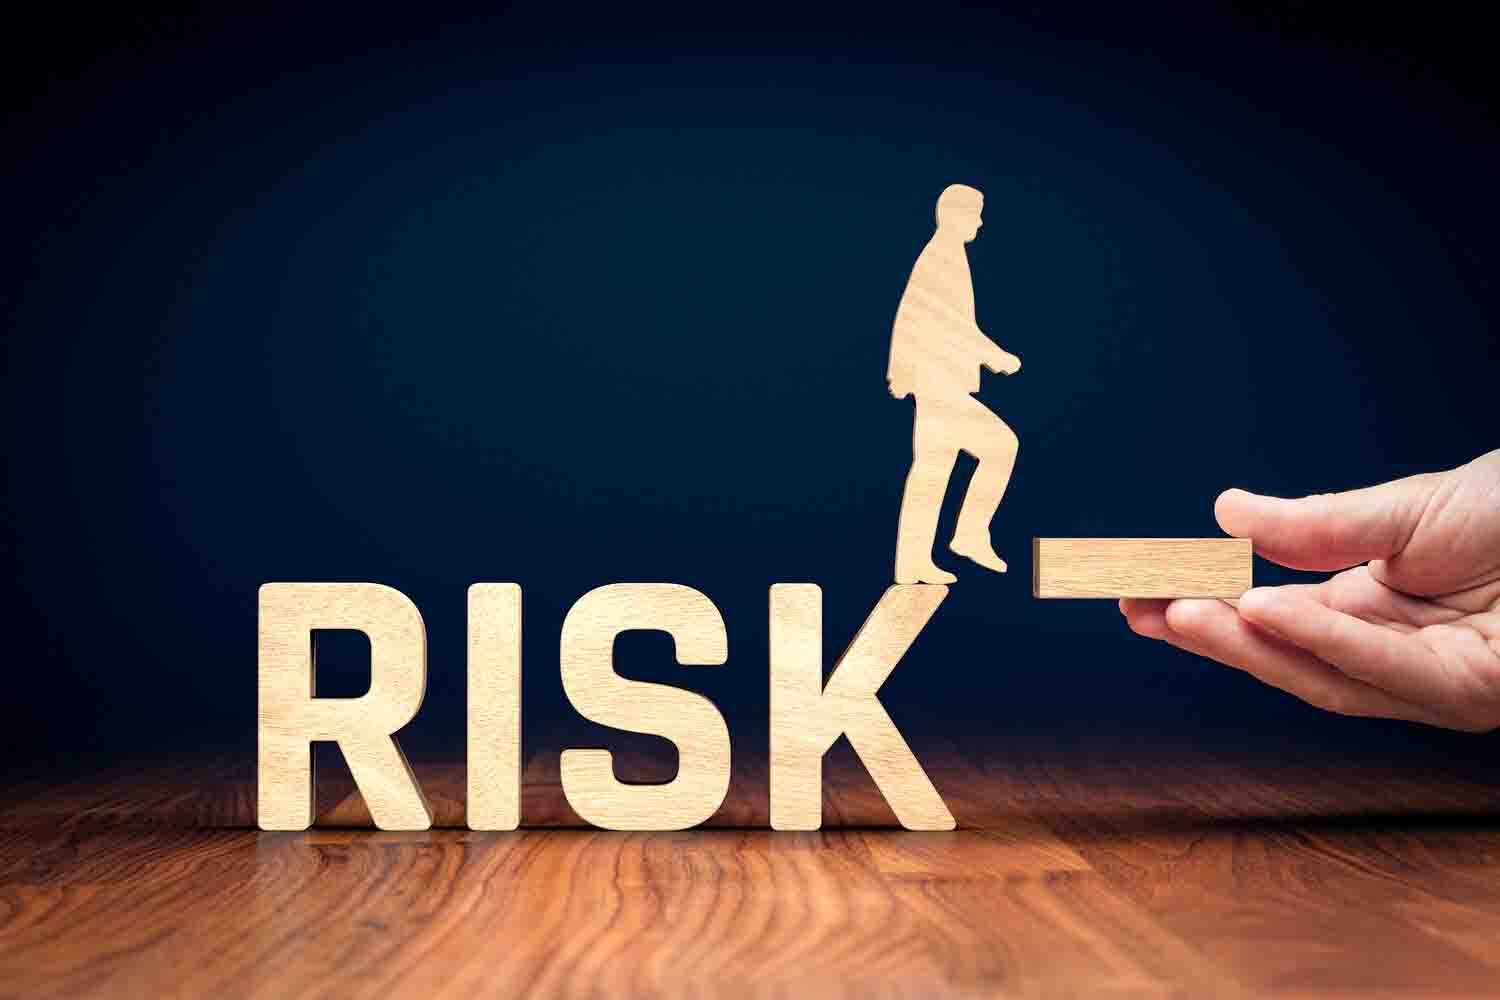 پیشینه پژوهش افشا ریسک: مطالعات داخلی در حوزه افشا مدیریت ریسک